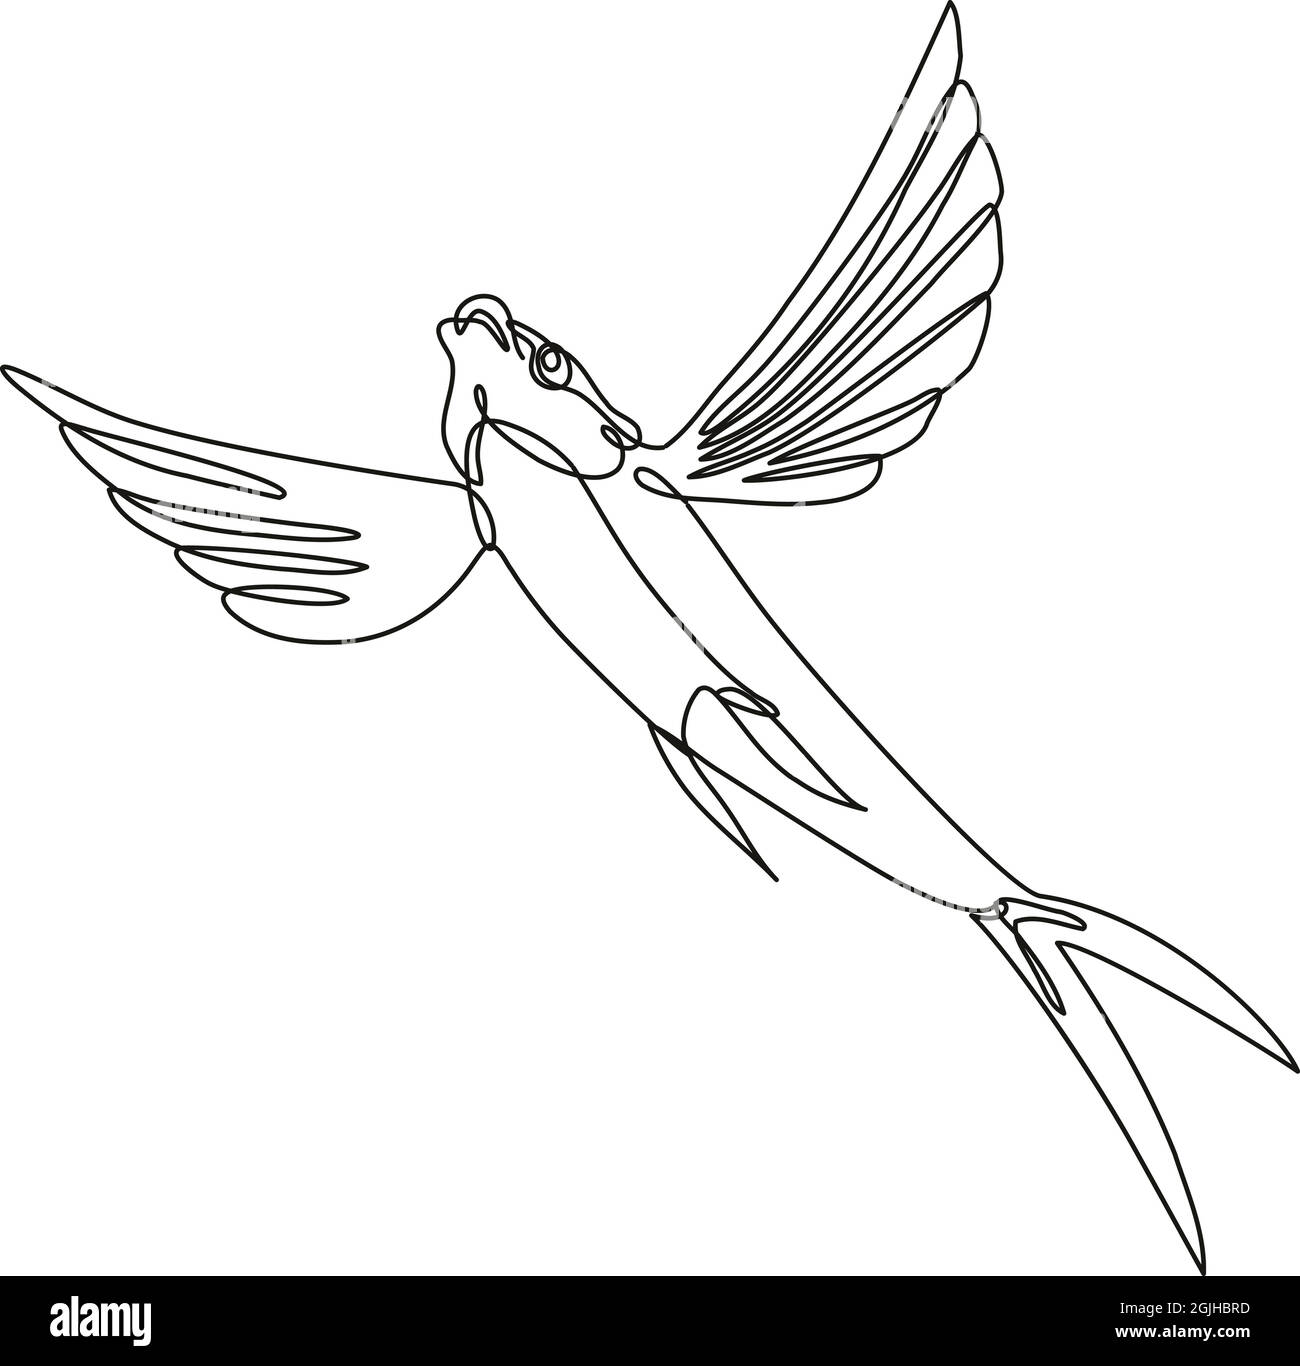 Fortlaufende Linienzeichnung Illustration eines Segelflossen fliegenden Fisches, der in Mono-Line oder Doodle-Stil in Schwarz und Weiß auf isoliertem Hintergrund abbricht. Stock Vektor